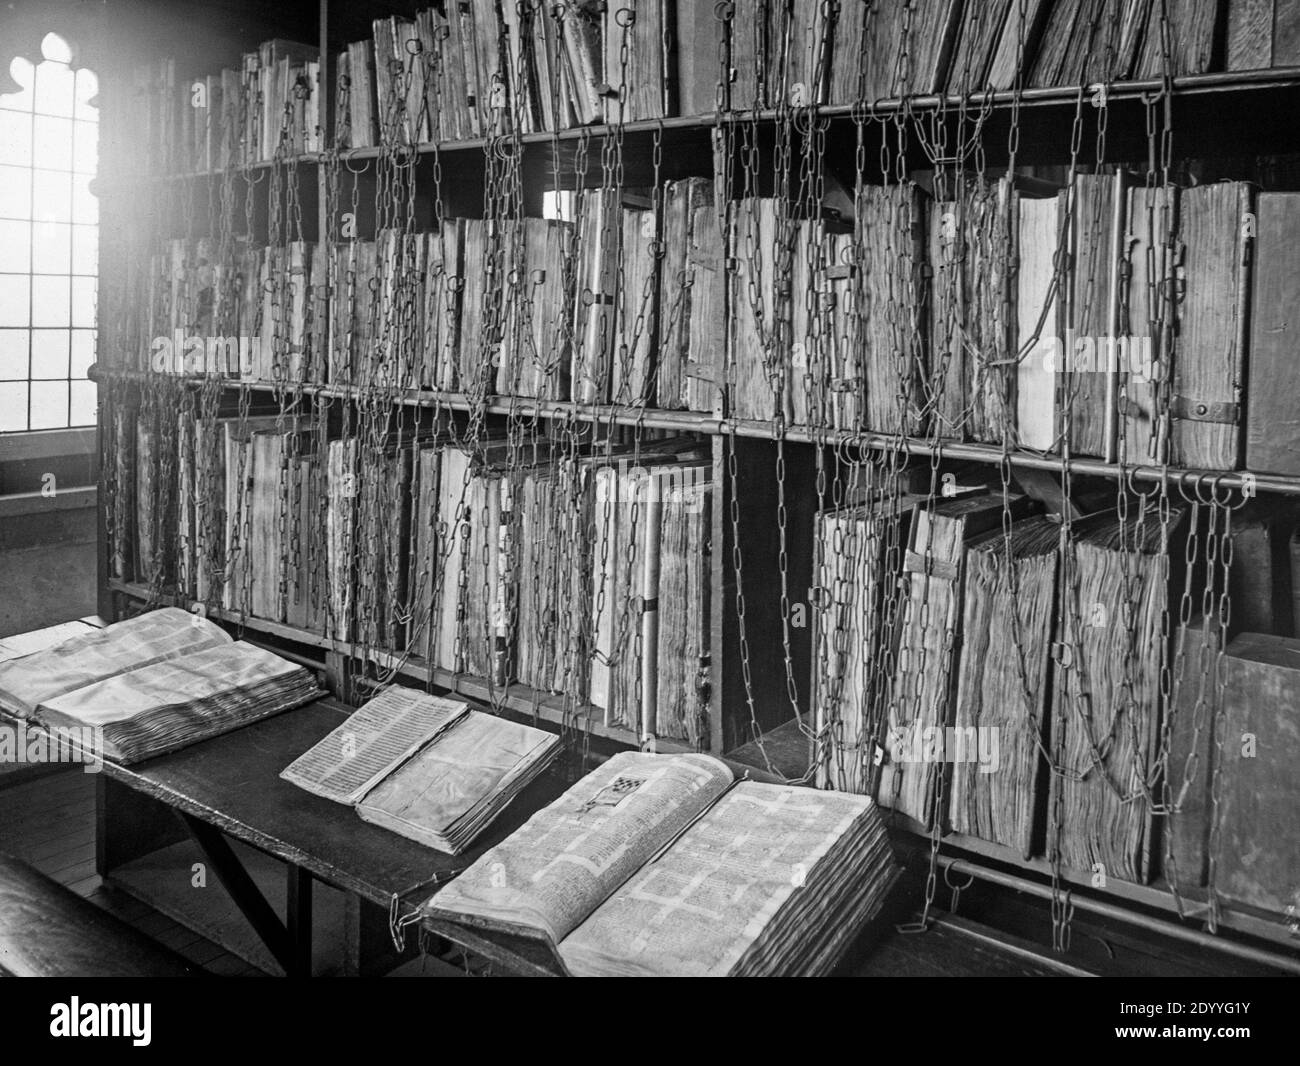 Una fotografia in bianco e nero del tardo Vittoriano che mostra i libri nella Biblioteca a catena della Cattedrale di Hereford in Inghilterra. Foto Stock